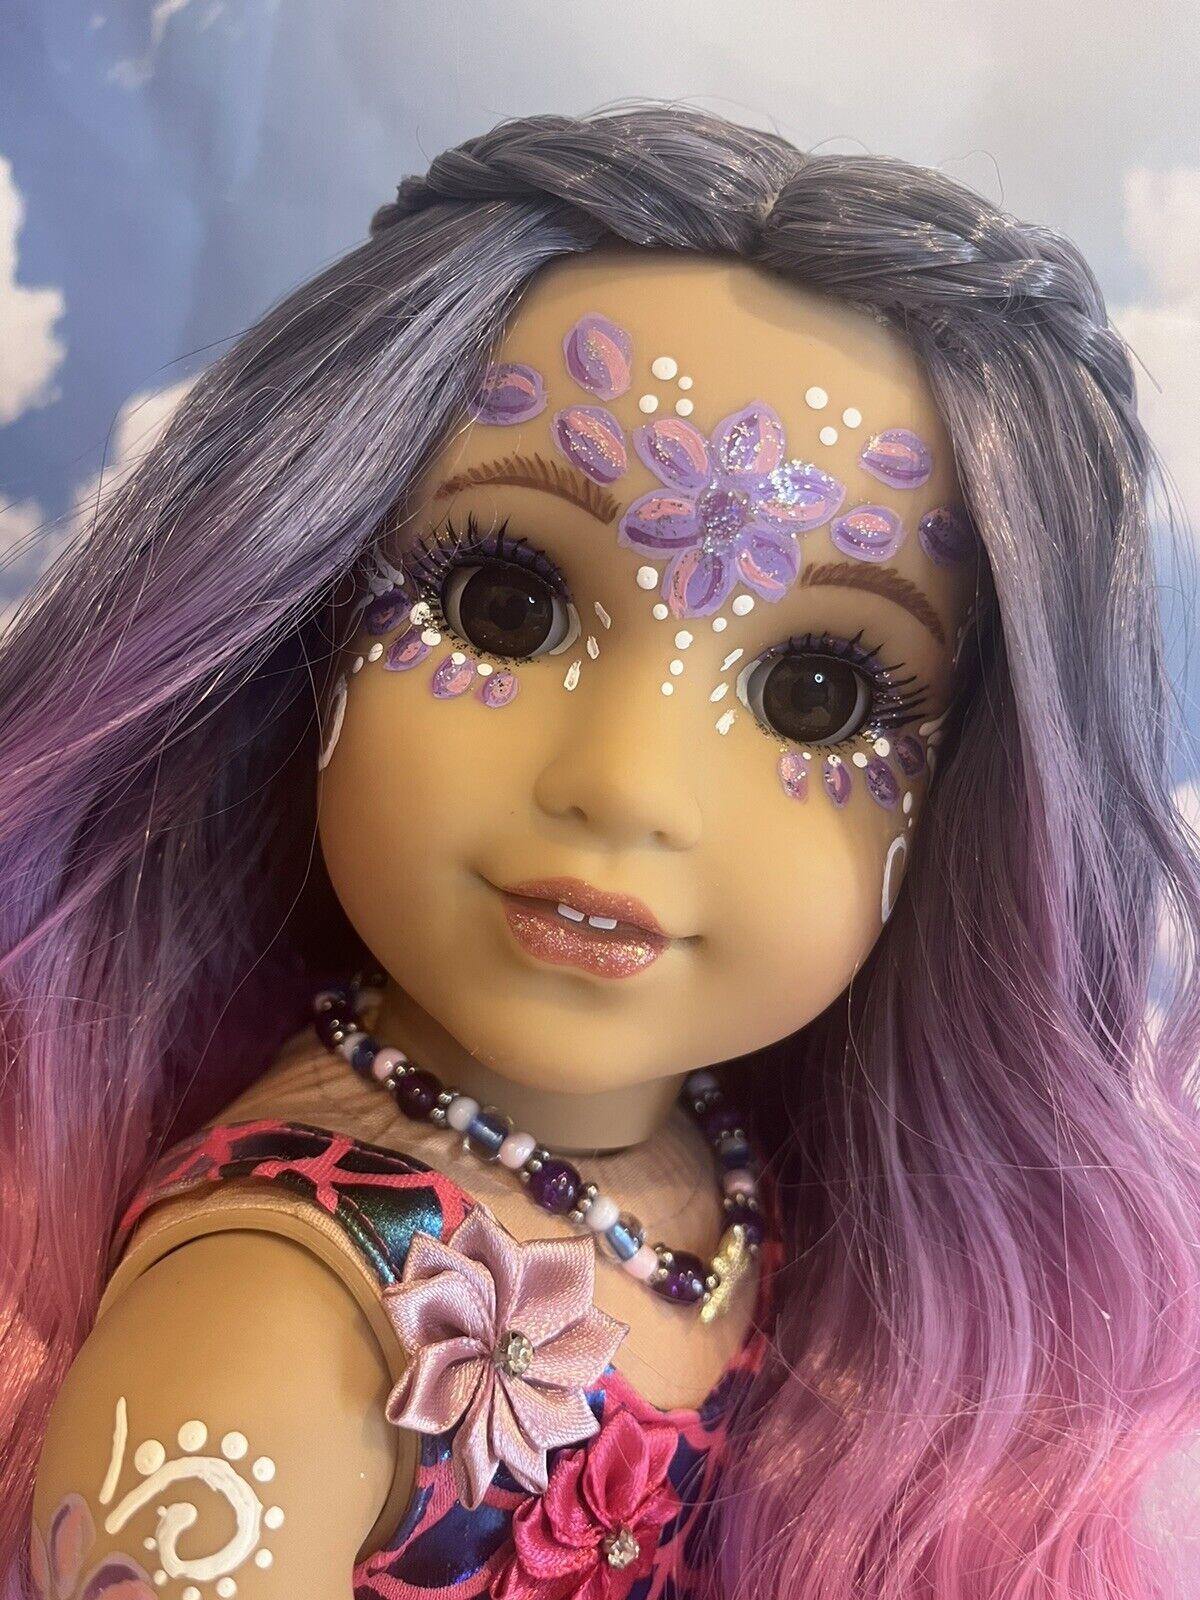 OOAK American Girl Doll Mermaid 18” Purple Pink Ombre Hair Facepaint Custom